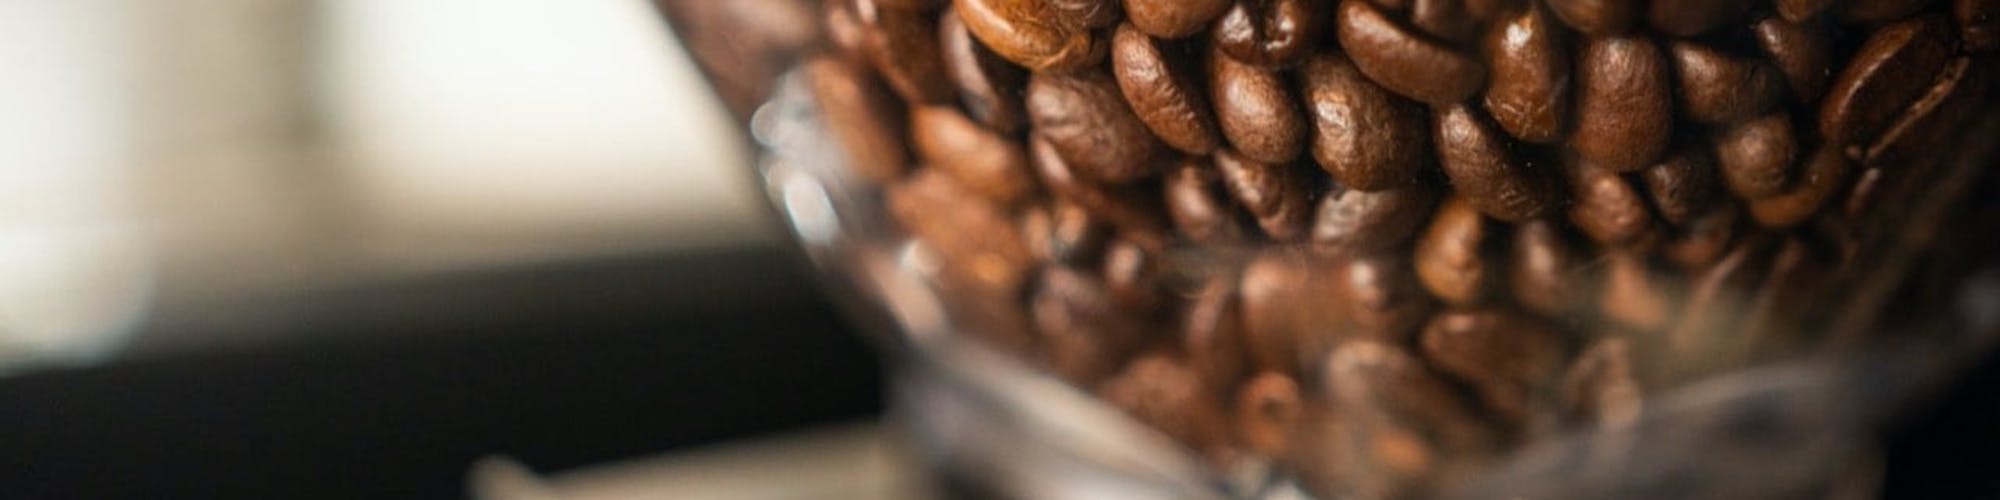 Bästa kaffekvarnen – så väljer du rätt